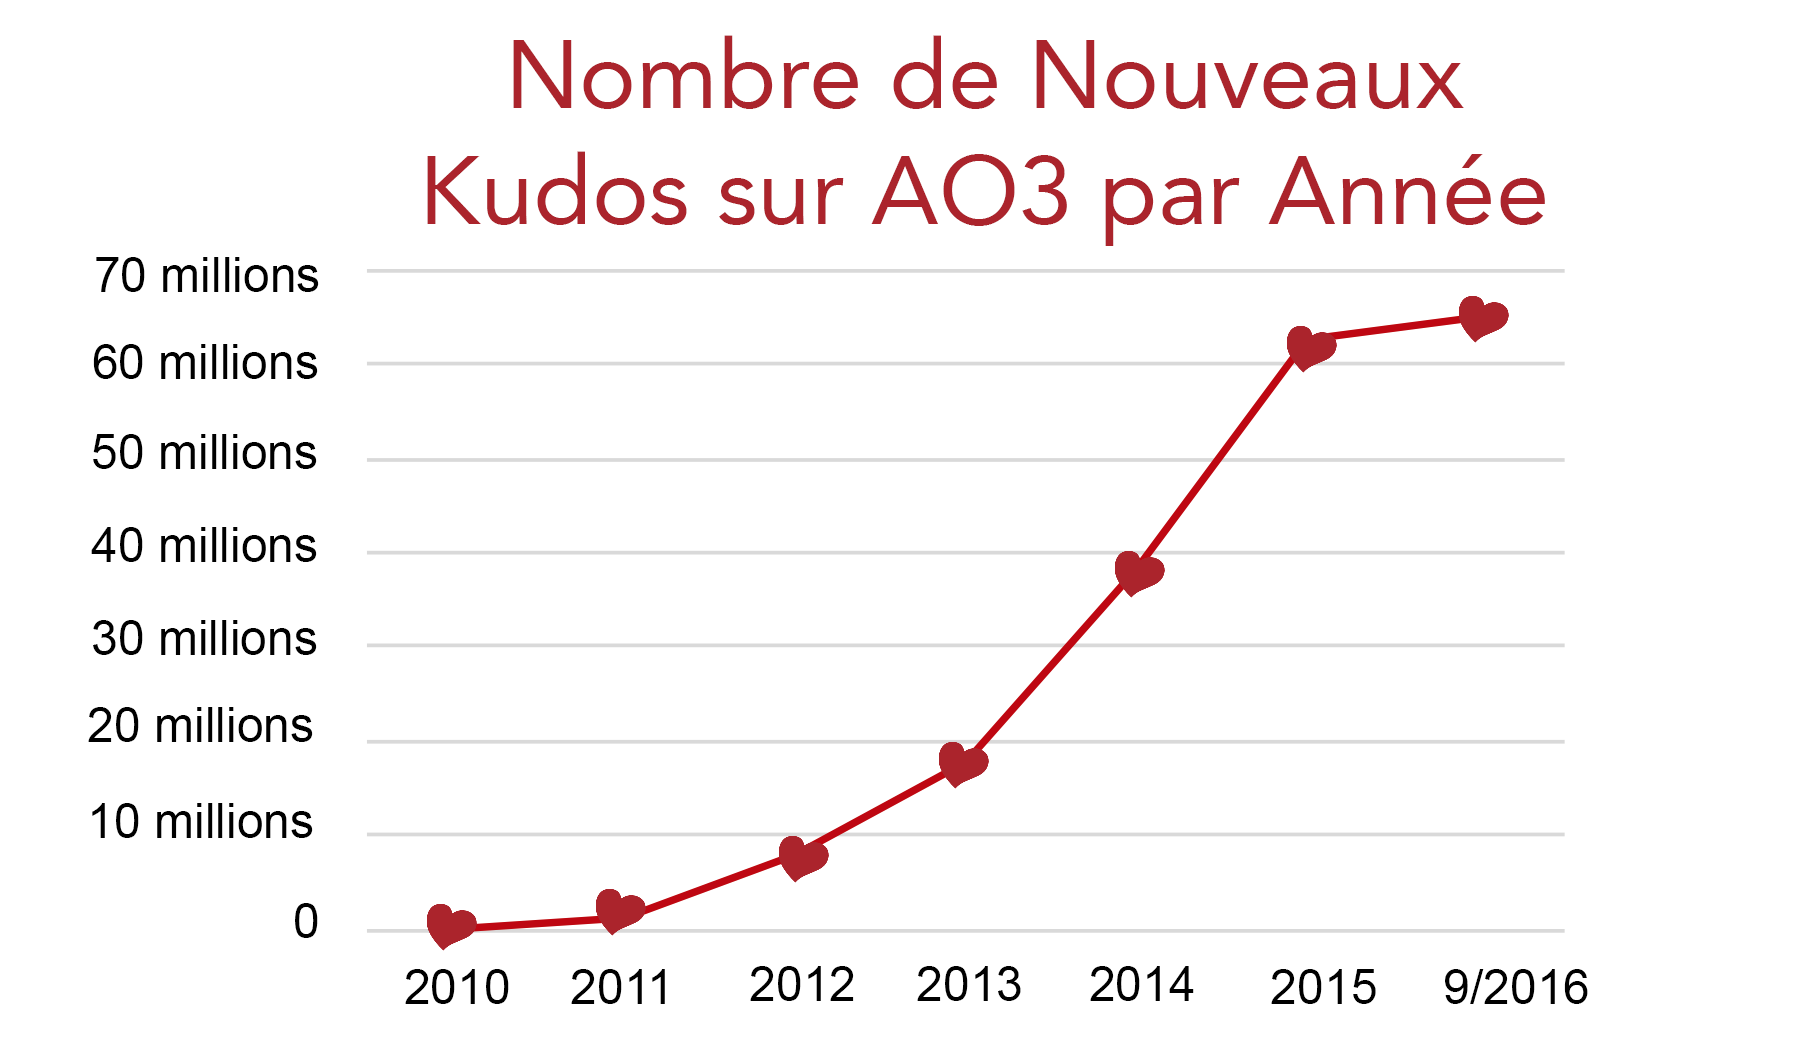 Graphique montrant la croissance du nombre de kudos sur AO3, depuis zéro en 2010 jusqu’à plus de 60 millions au mois de septembre 2016.